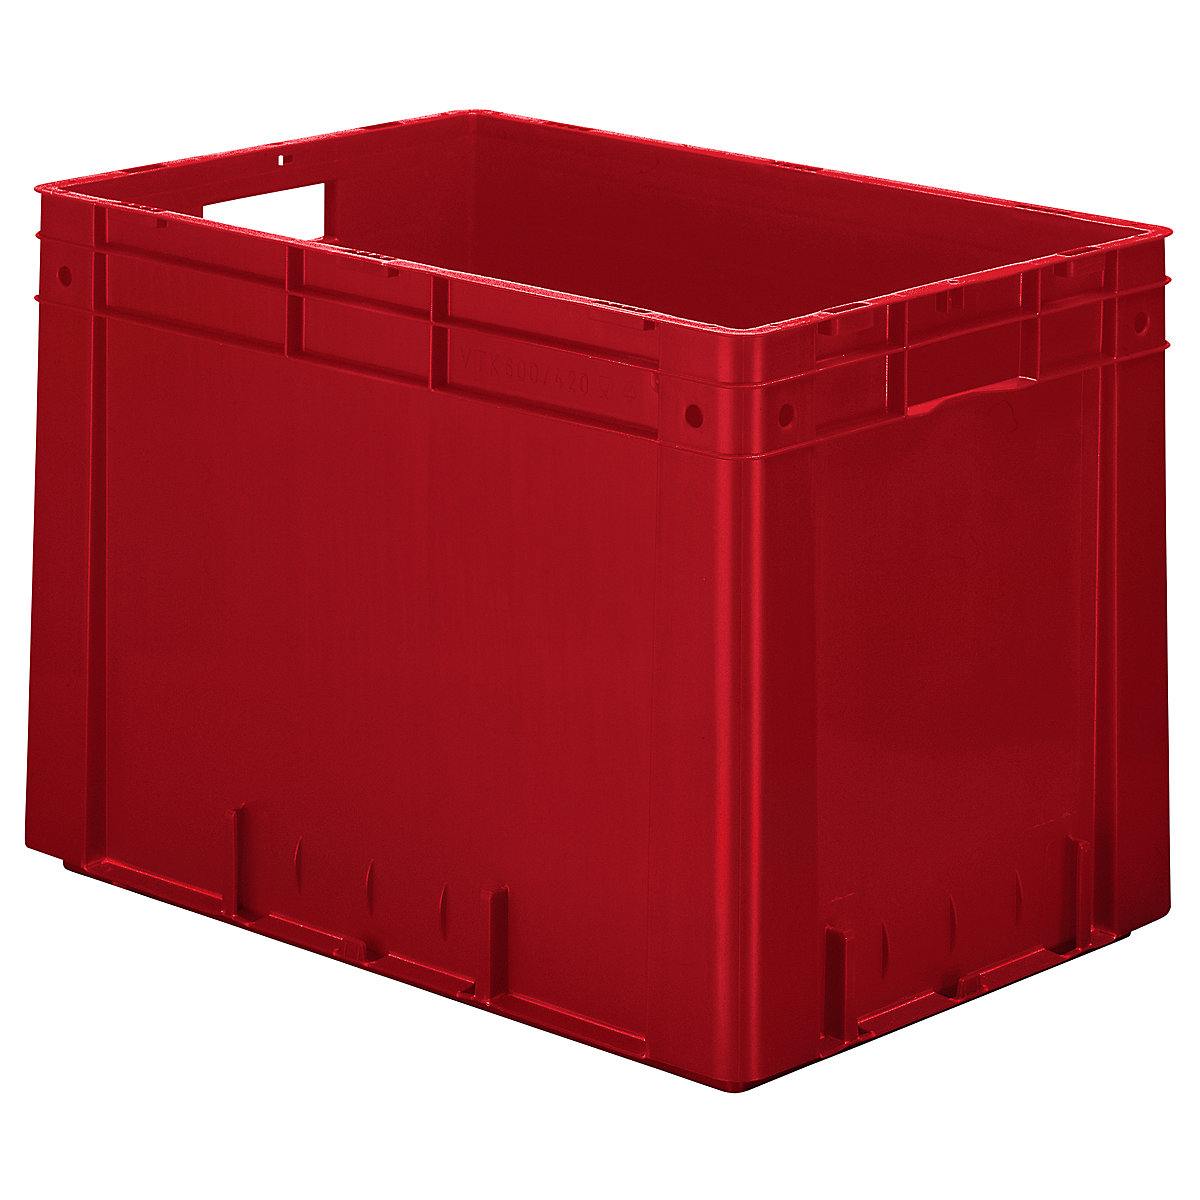 Euro-prepravka na ťažký náklad, polypropylén, objem 80 l, d x š x v 600 x 400 x 420 mm, steny uzatvorené, dno uzatvorené, červená, OJ 2 ks